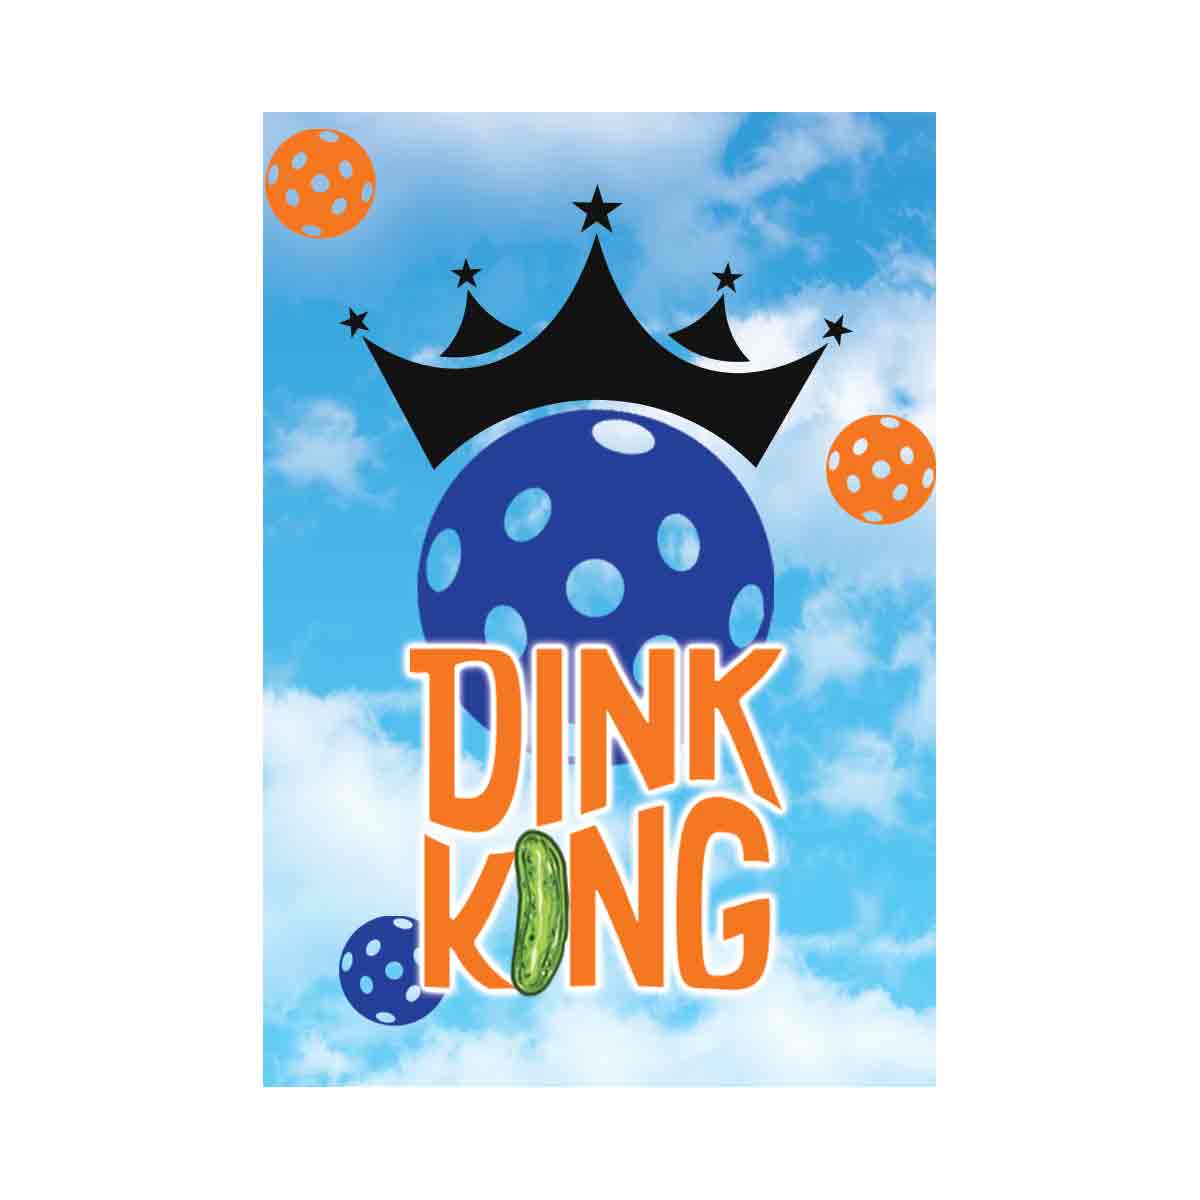 Dink King